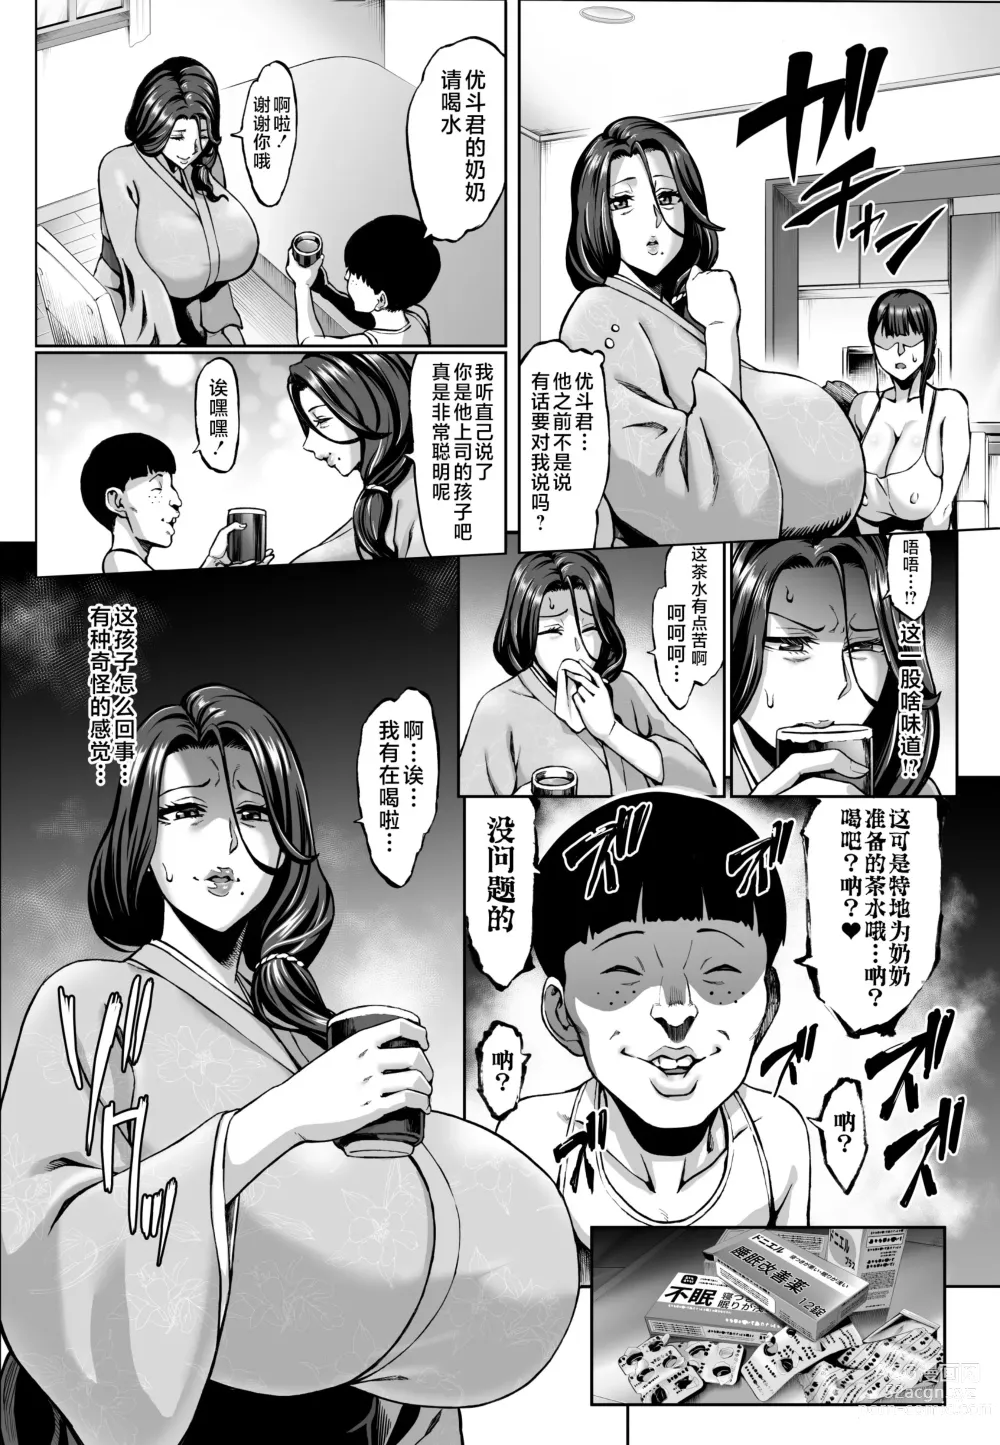 Page 4 of doujinshi お前の母ちゃんイクときの顔すげぇブスだぞｗ2 + おまけ